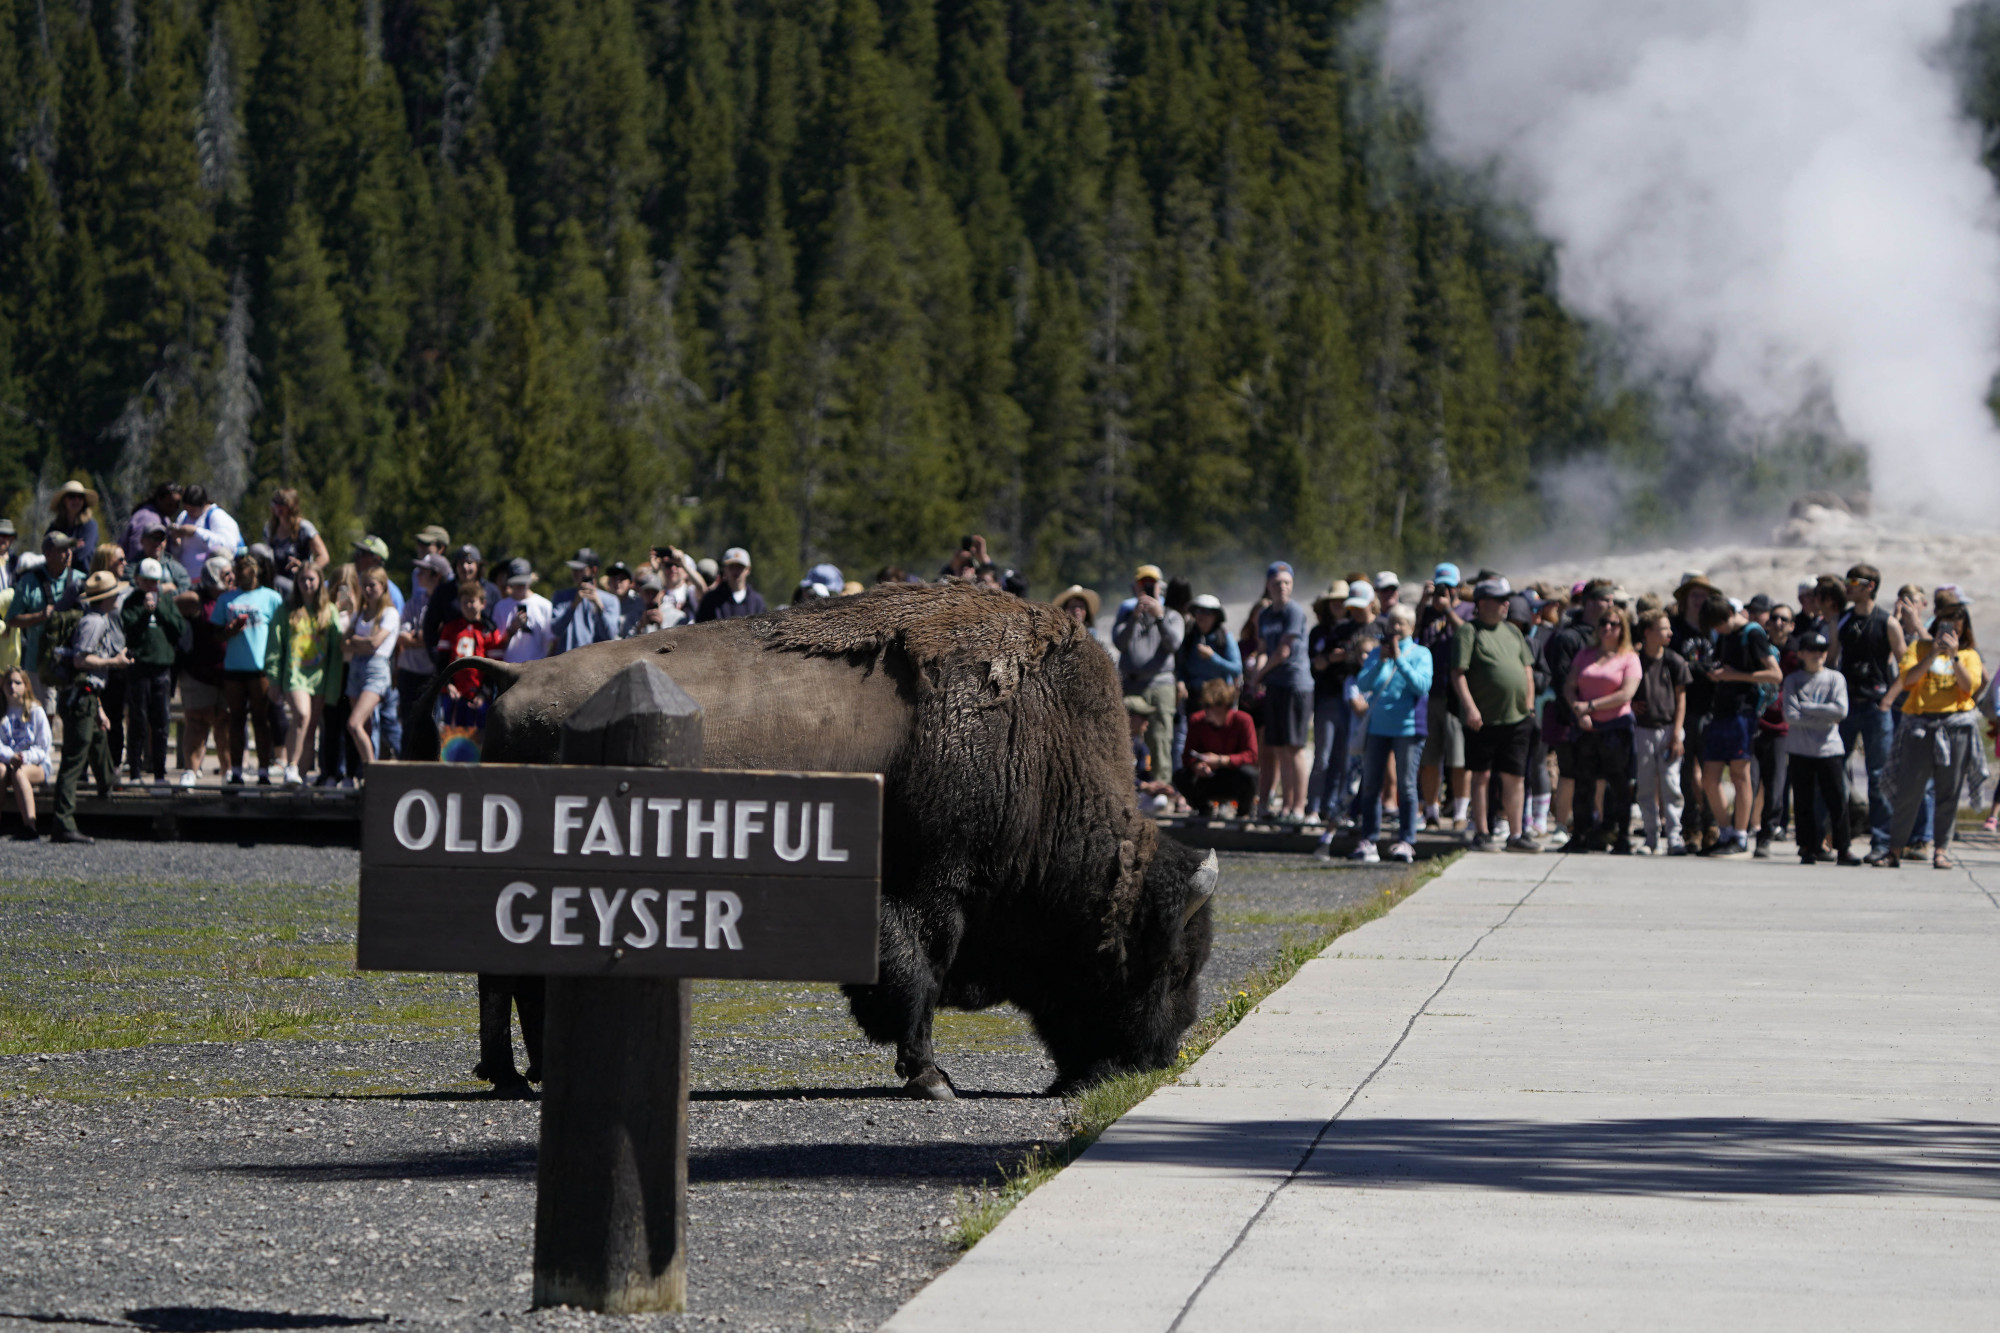 Két embert is megtámadtak a bölények a héten a Yellowstone parkban